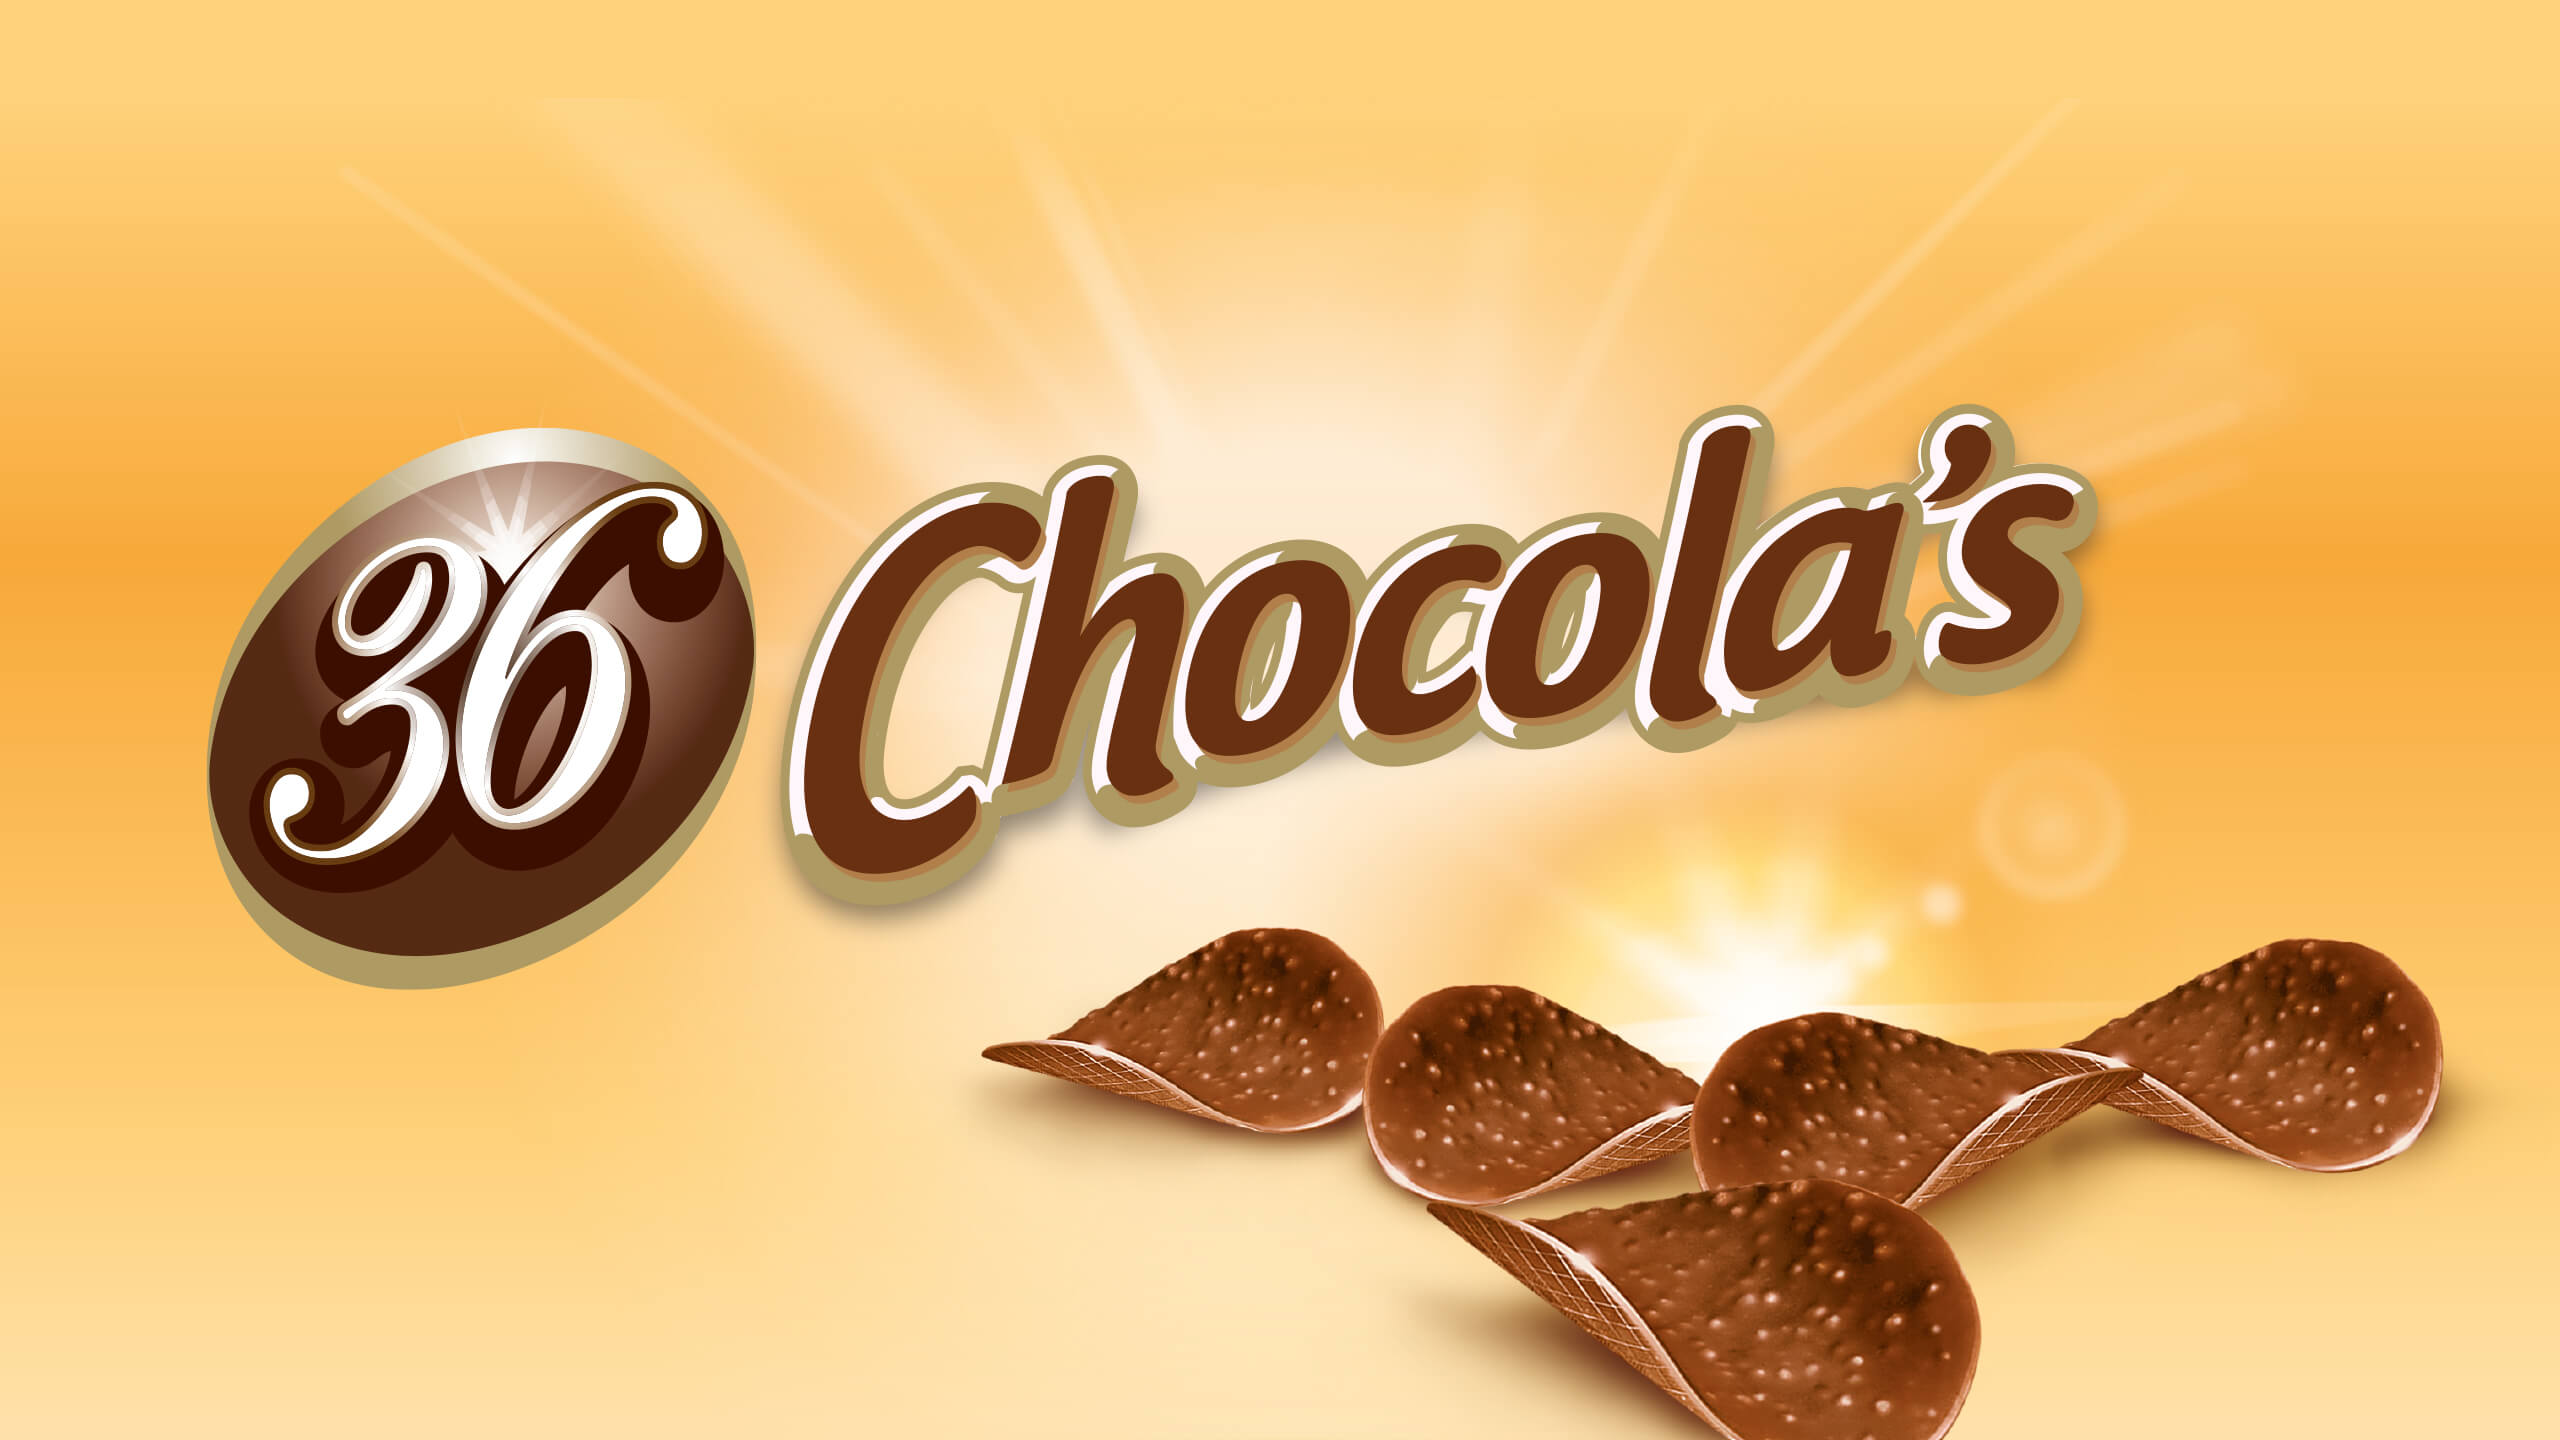 branding chocolade 36 chocolas